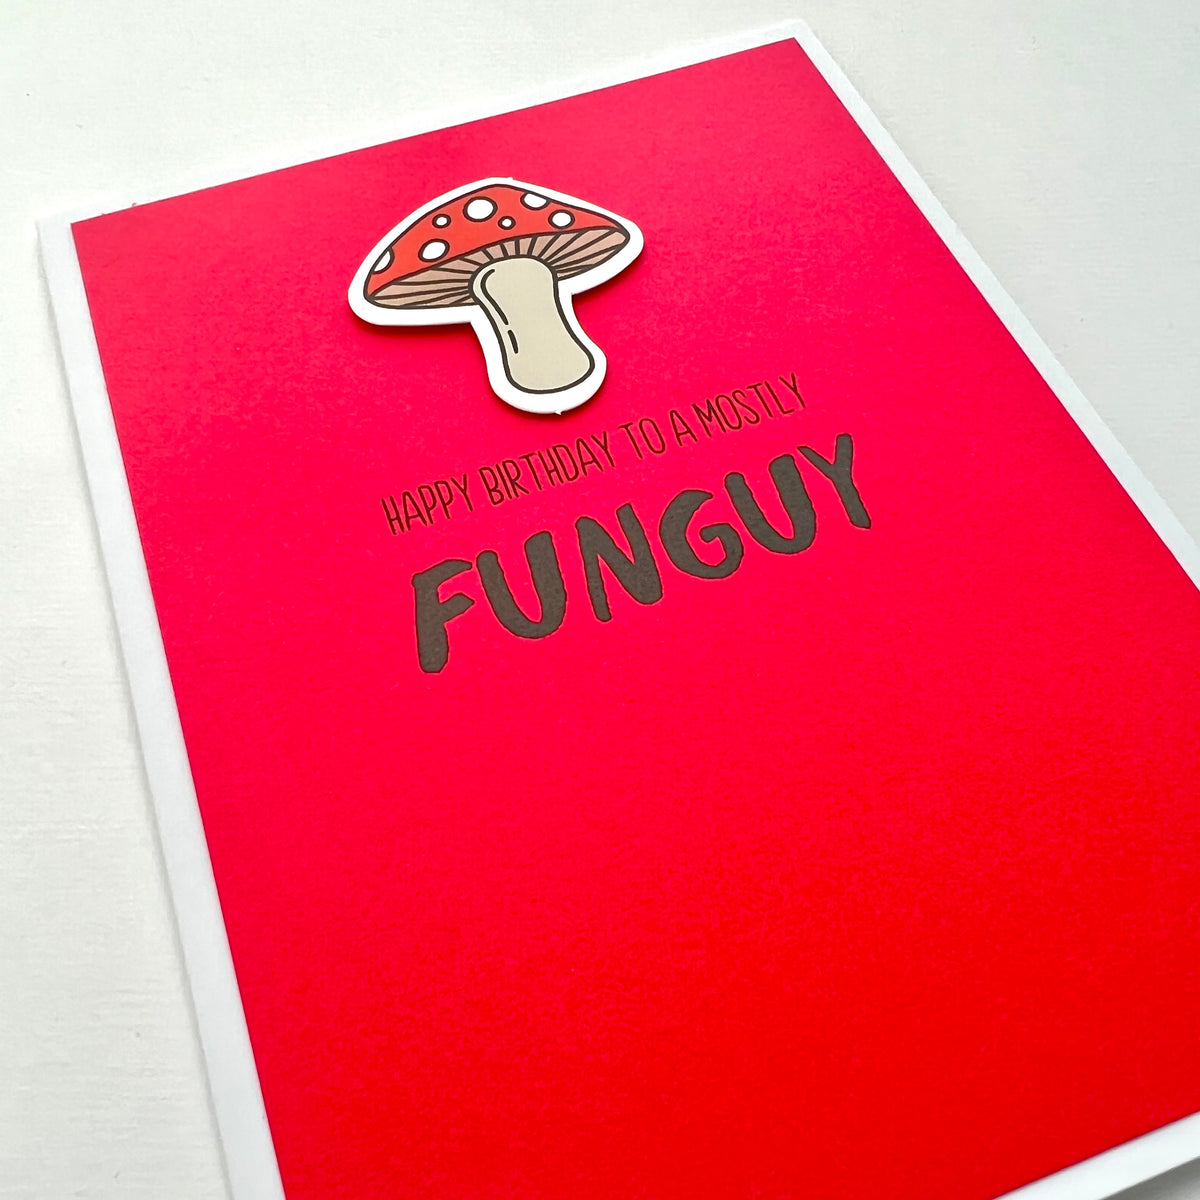 Birthday Mostly Funguy mushroom card